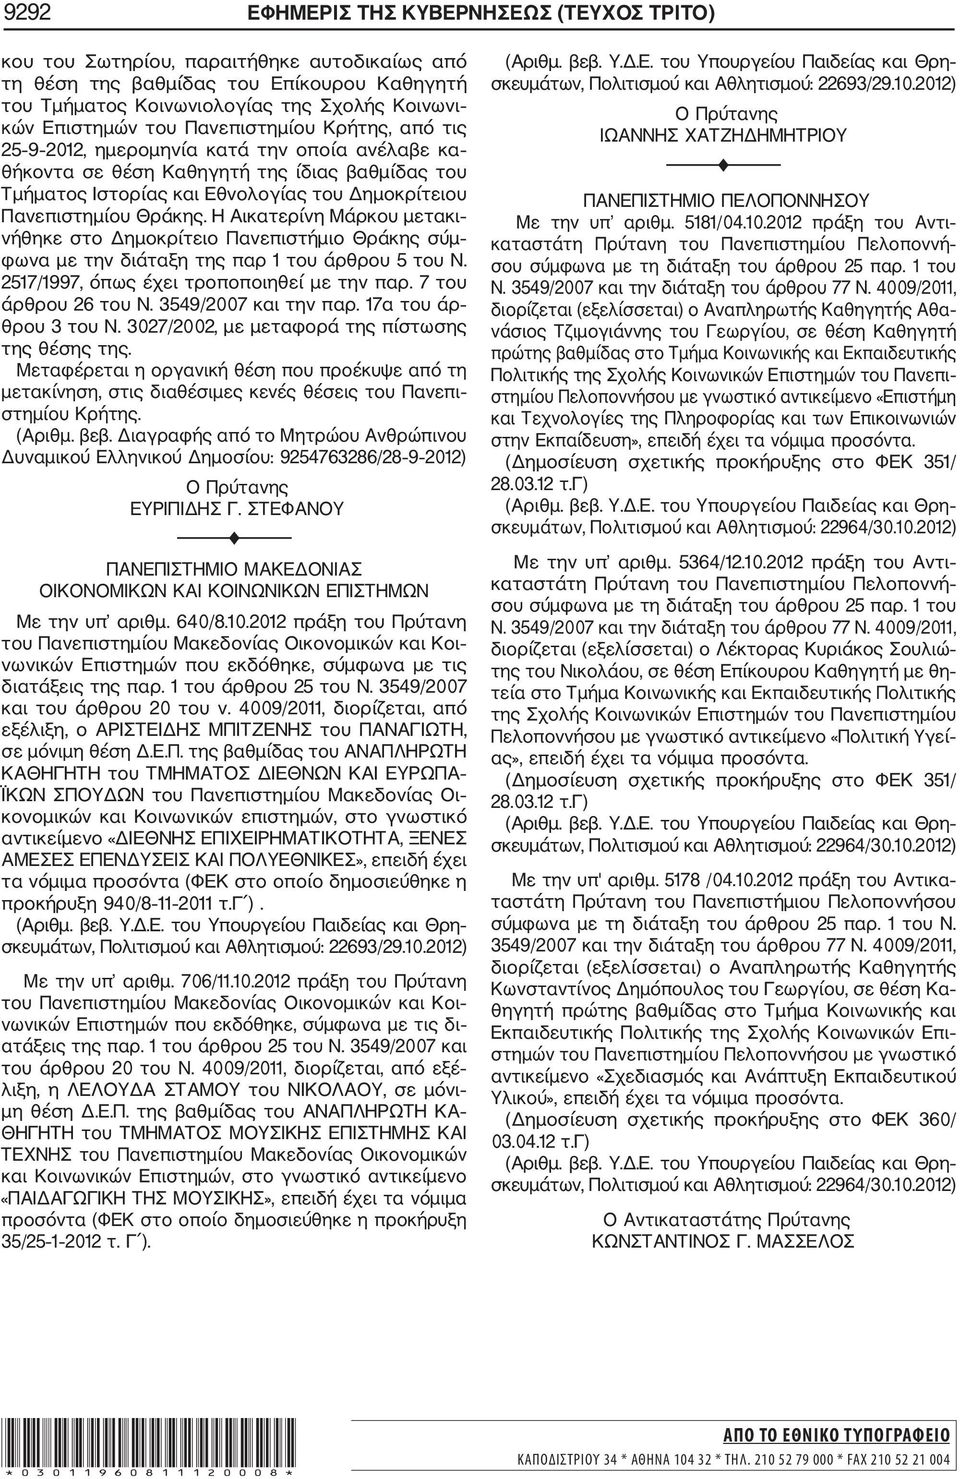 Η Αικατερίνη Μάρκου μετακι νήθηκε στο Δημοκρίτειο Πανεπιστήμιο Θράκης σύμ φωνα με την διάταξη της παρ 1 του άρθρου 5 του Ν. 2517/1997, όπως έχει τροποποιηθεί με την παρ. 7 του άρθρου 26 του Ν.